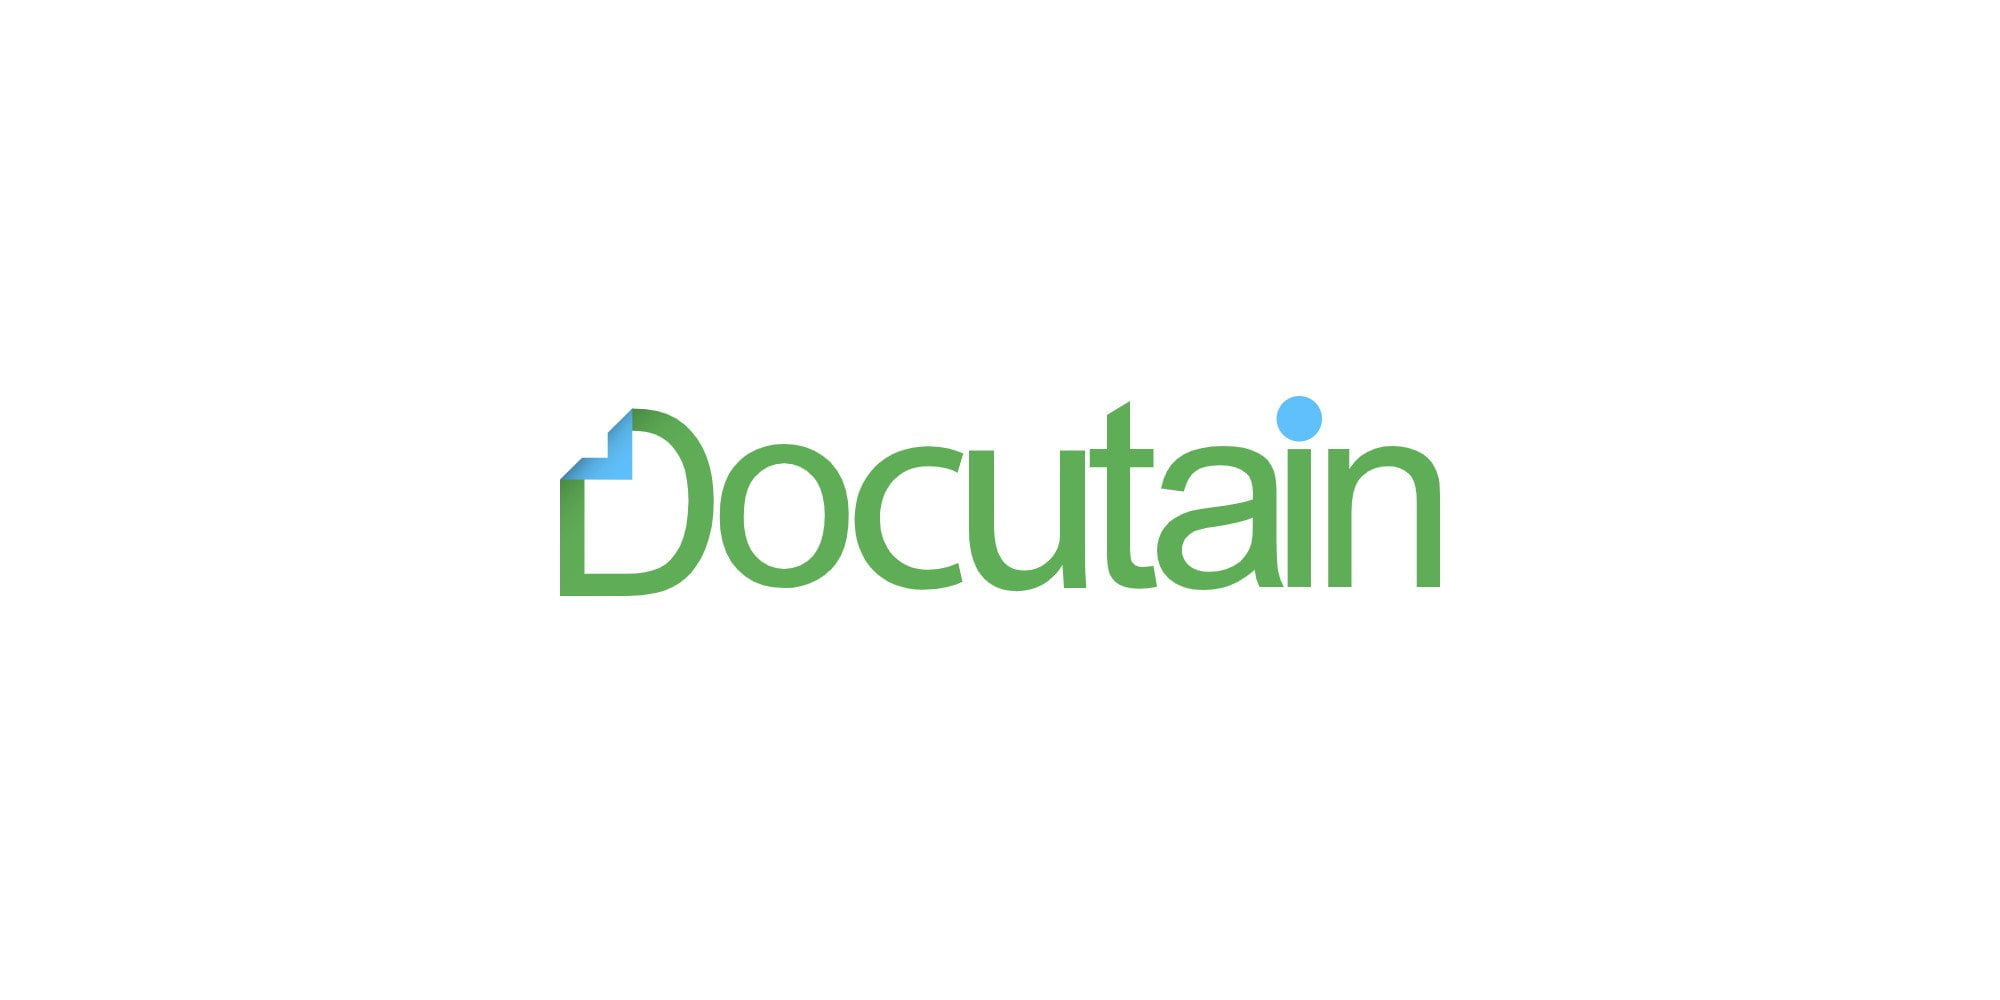 Revisión de la aplicación Docutain